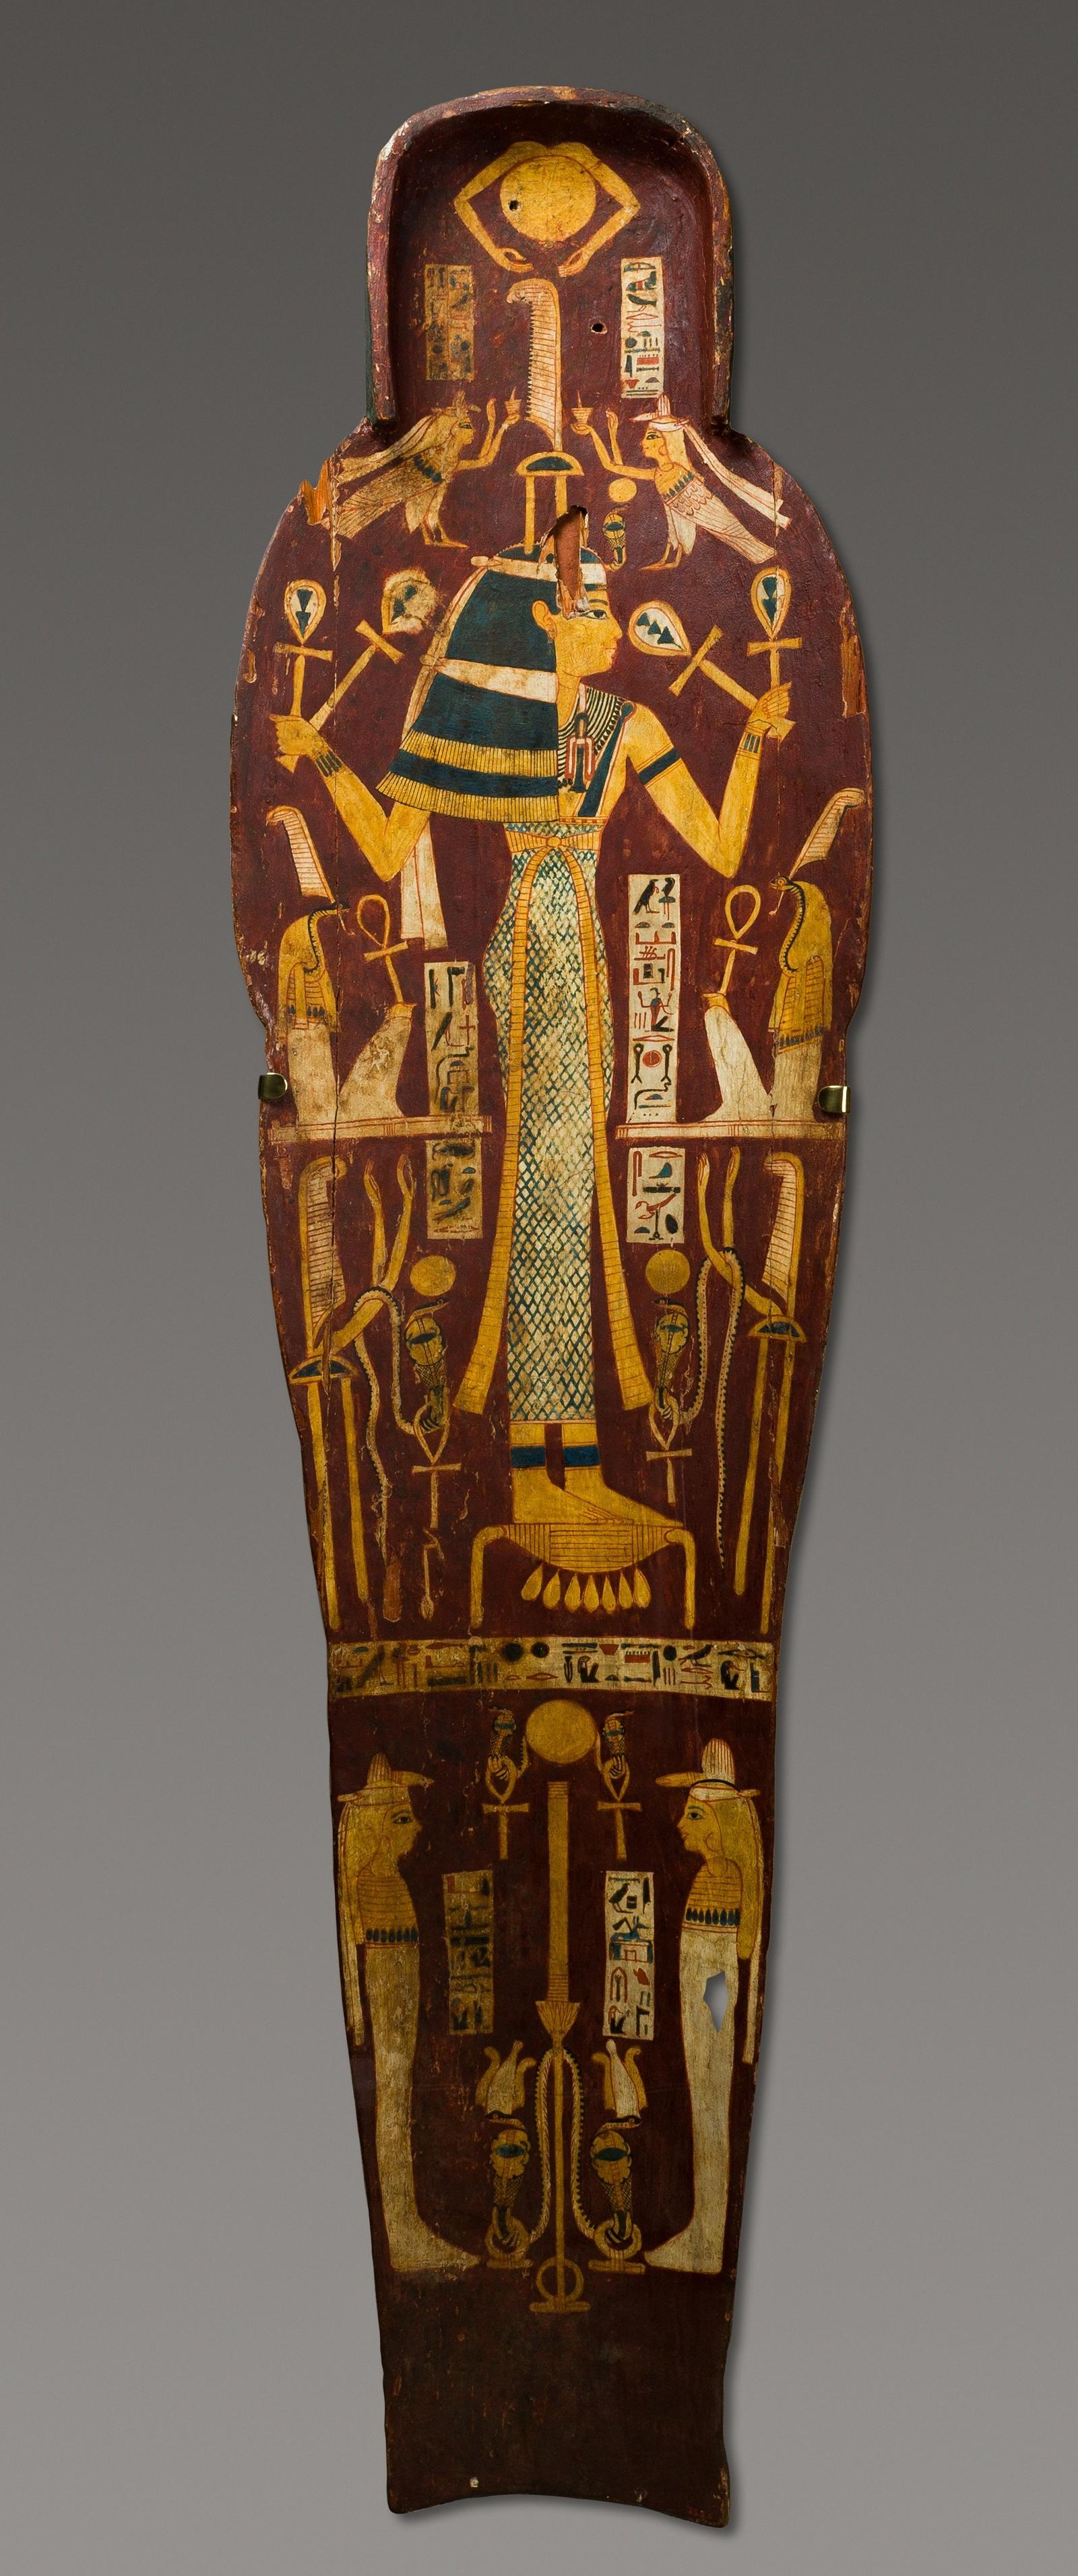 埃及贵族墓陪葬模型栩栩如生人小魂不小纽约大都会艺术博物馆藏高清